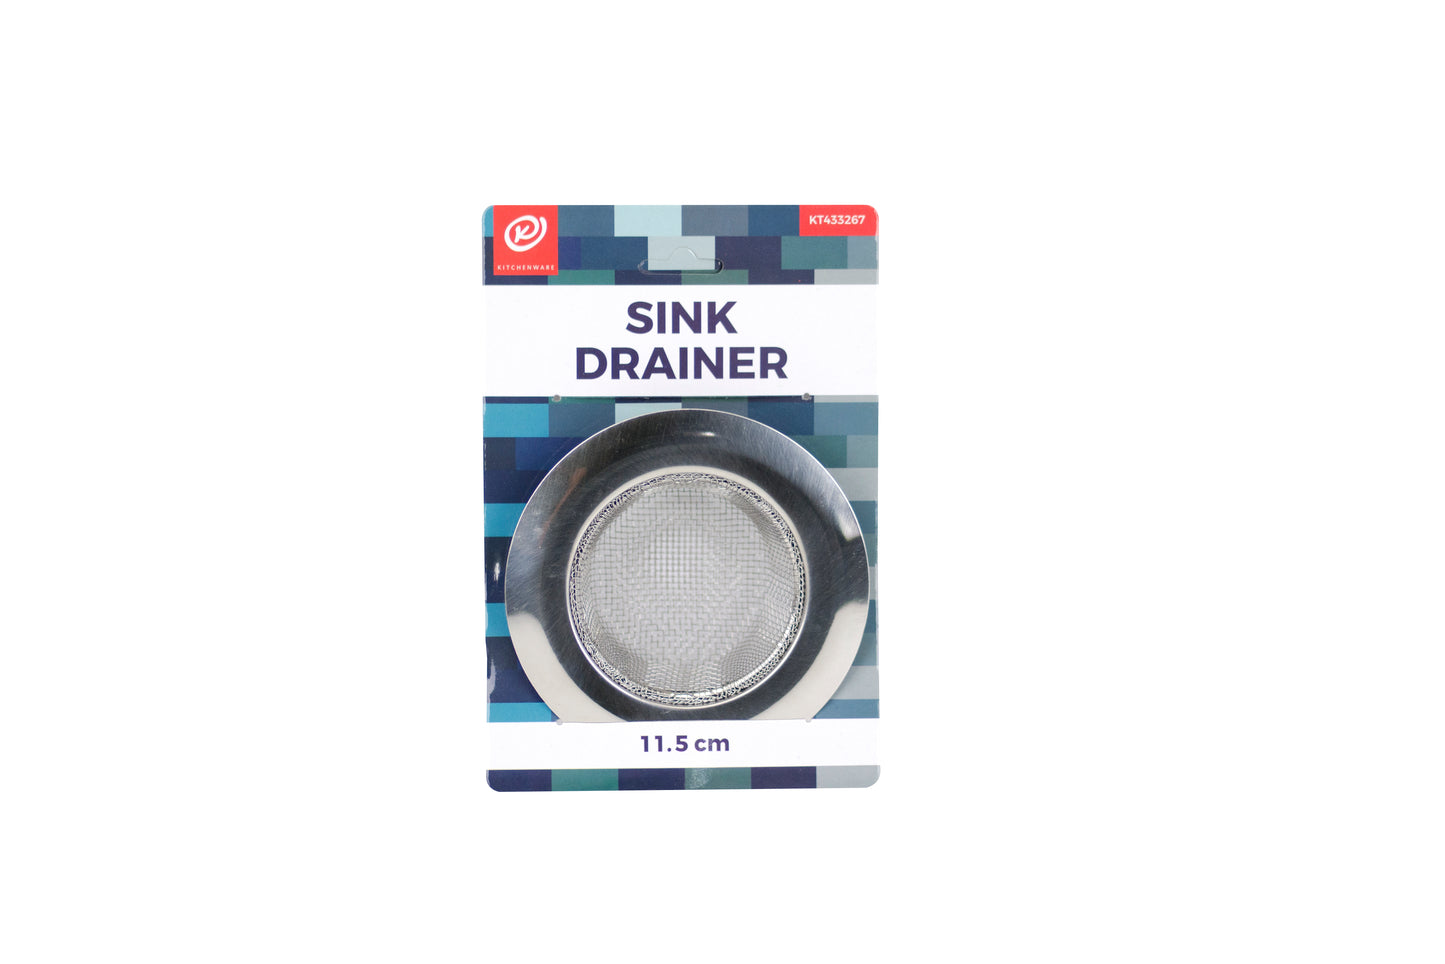 K. Sink Drainer - 11.5cm